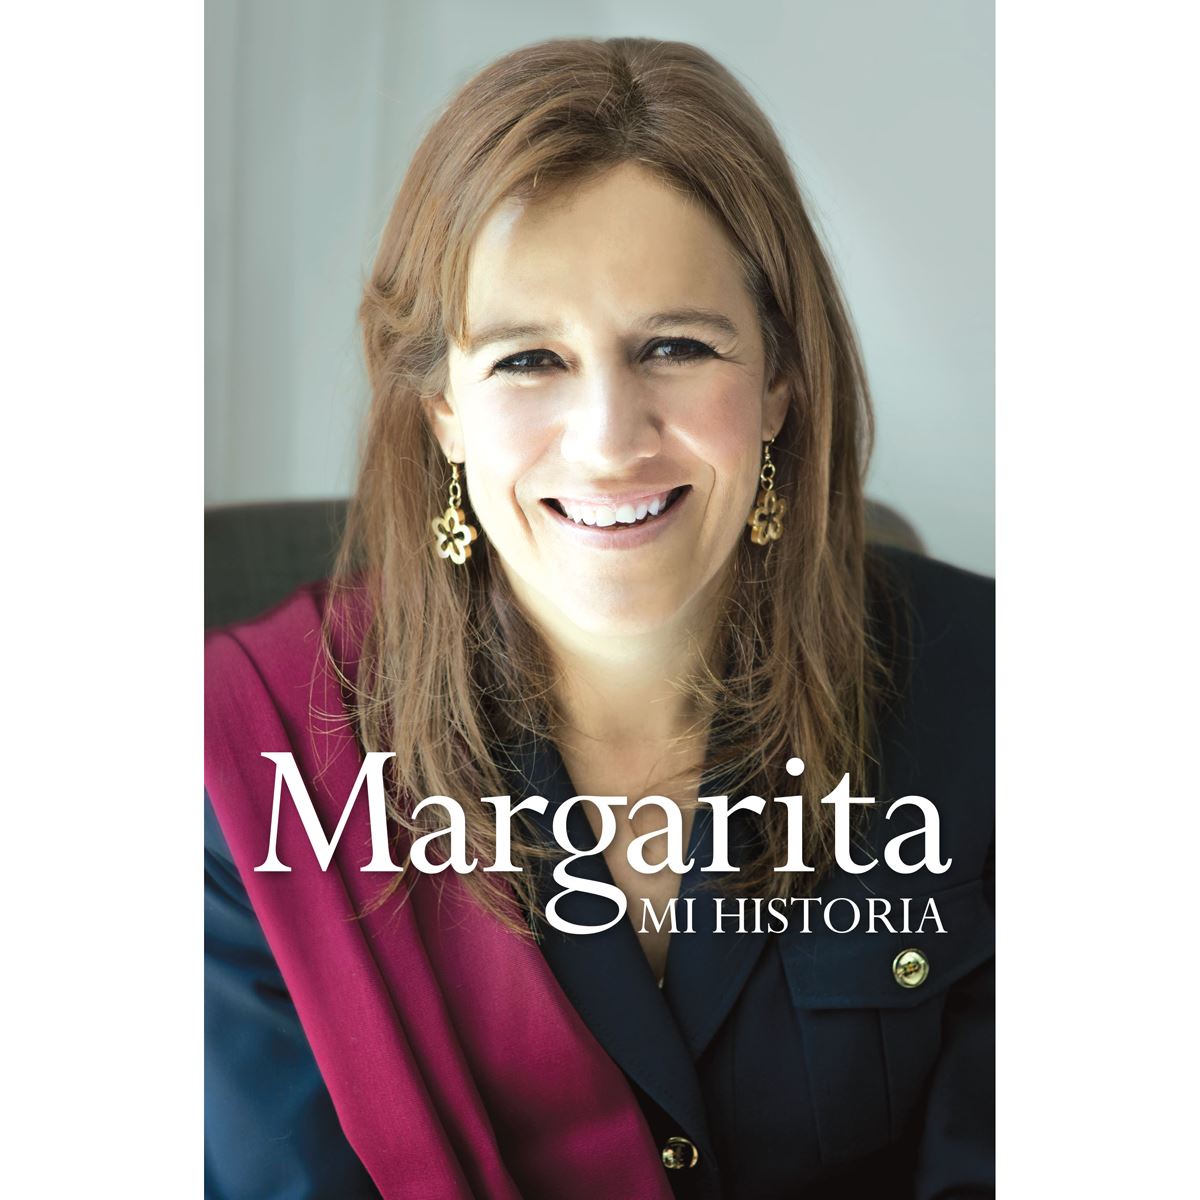 Margarita. Mi historia